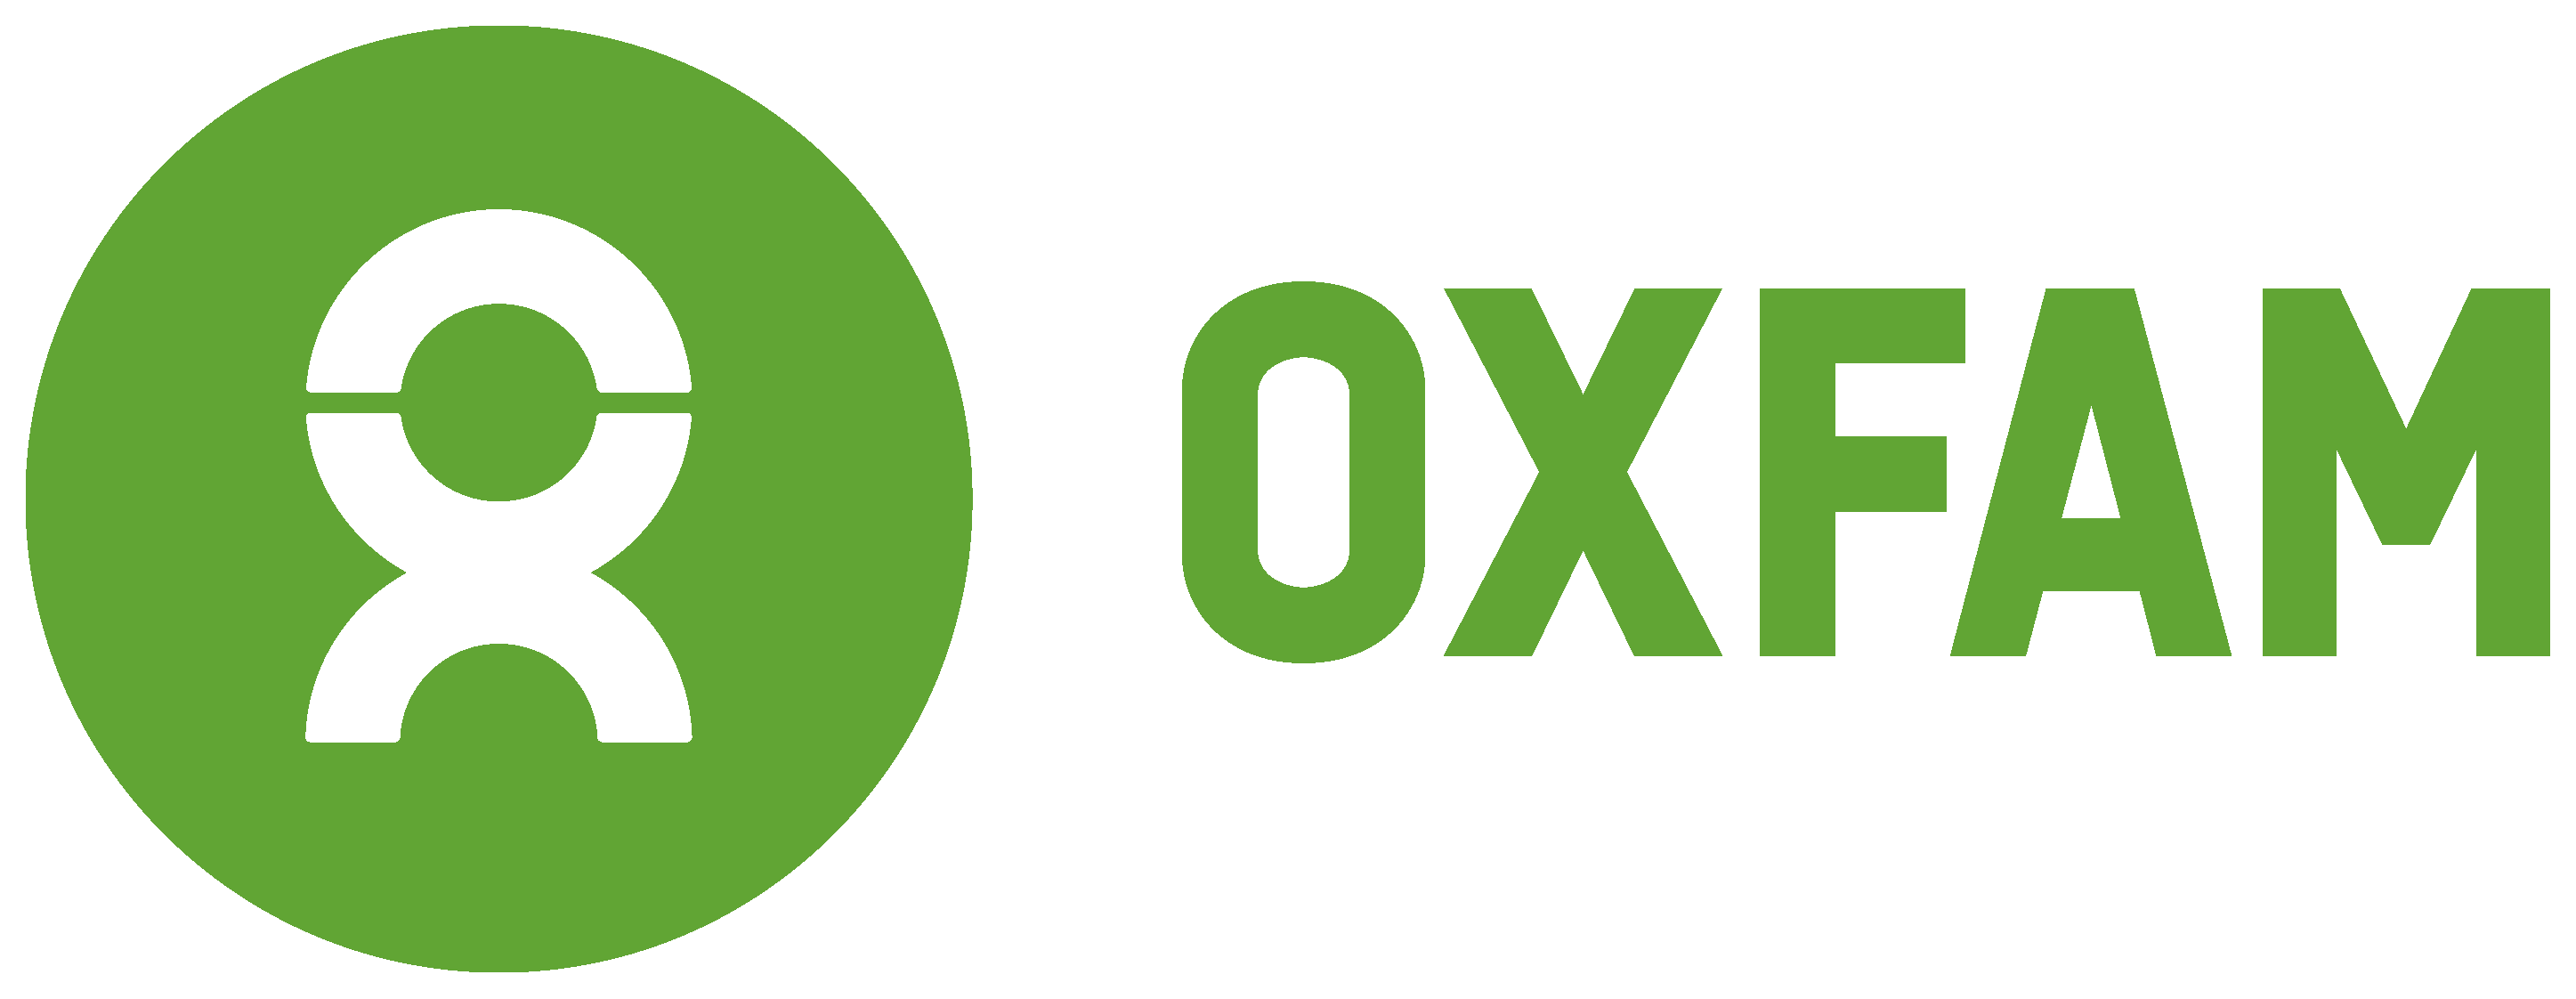 Oxfam - 7.5